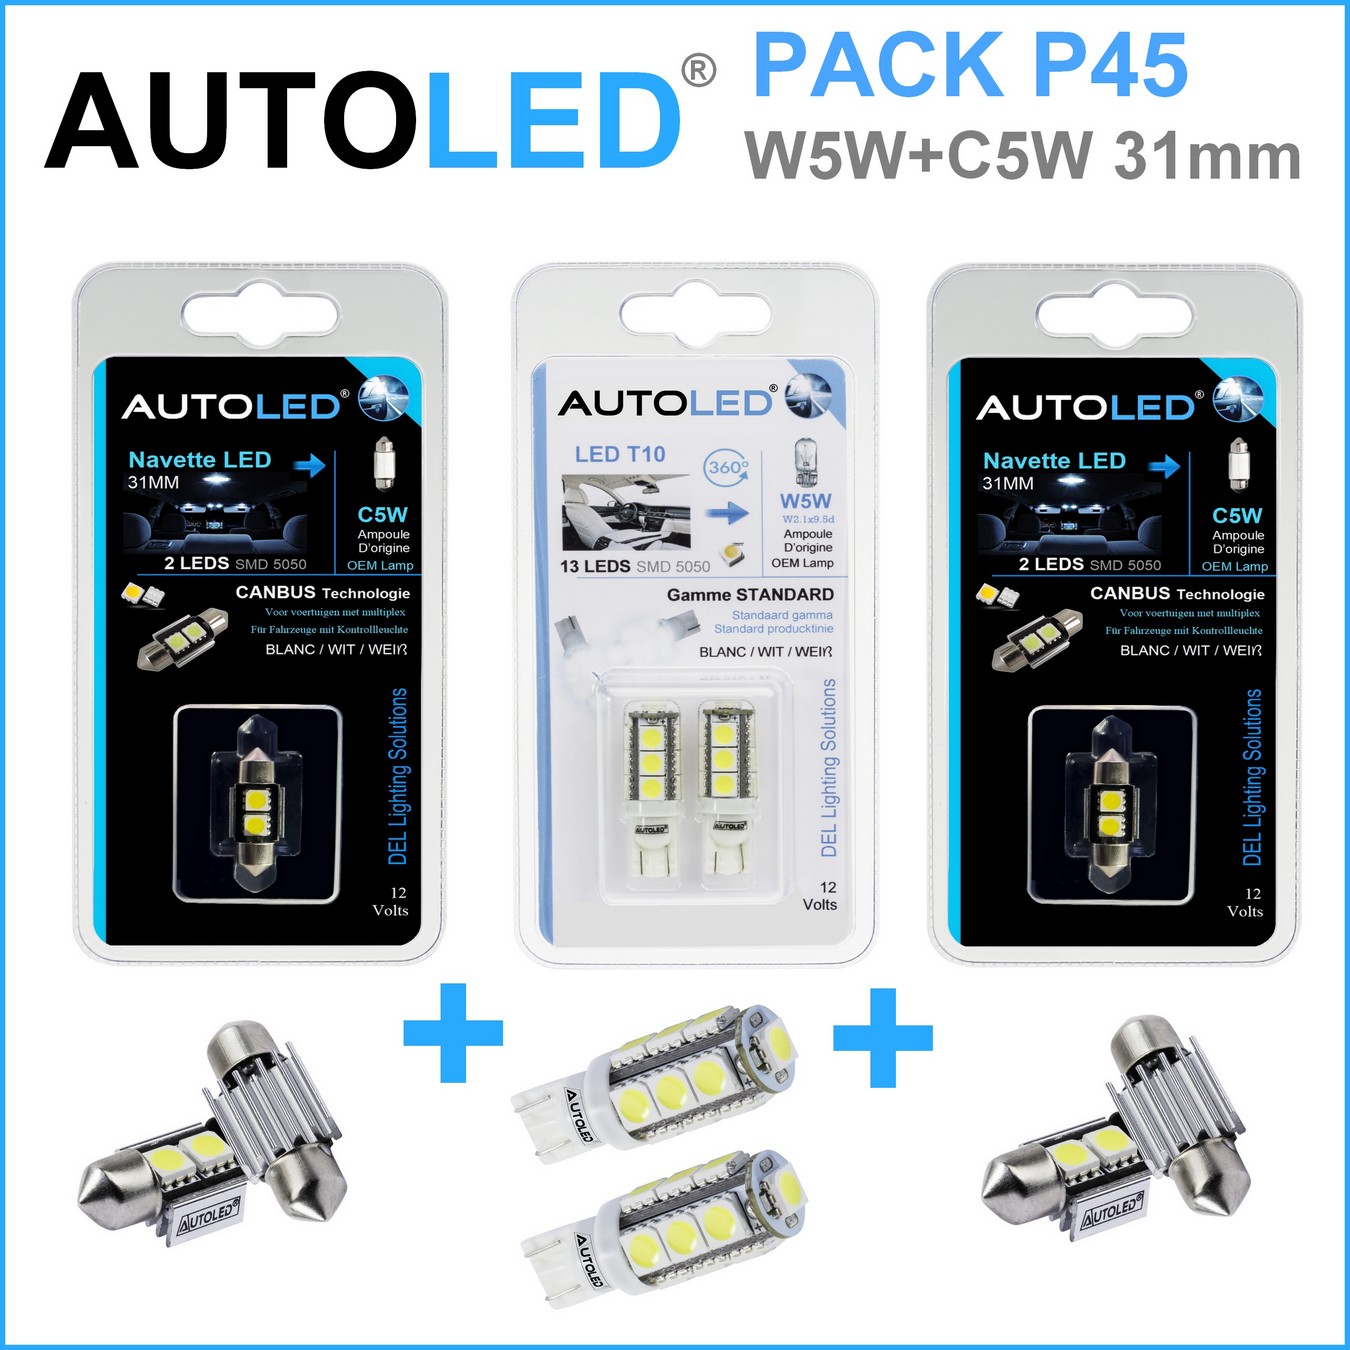 Pack-4-ampoules-led-blanc-habitacle-plafonnier-boite -a gants-coffre-t10-13leds-smd-5050-w5w-navette-c5w-c10w-31mm-canbus-3leds-blanc-eclairage-led-autoled-pack-p45.1